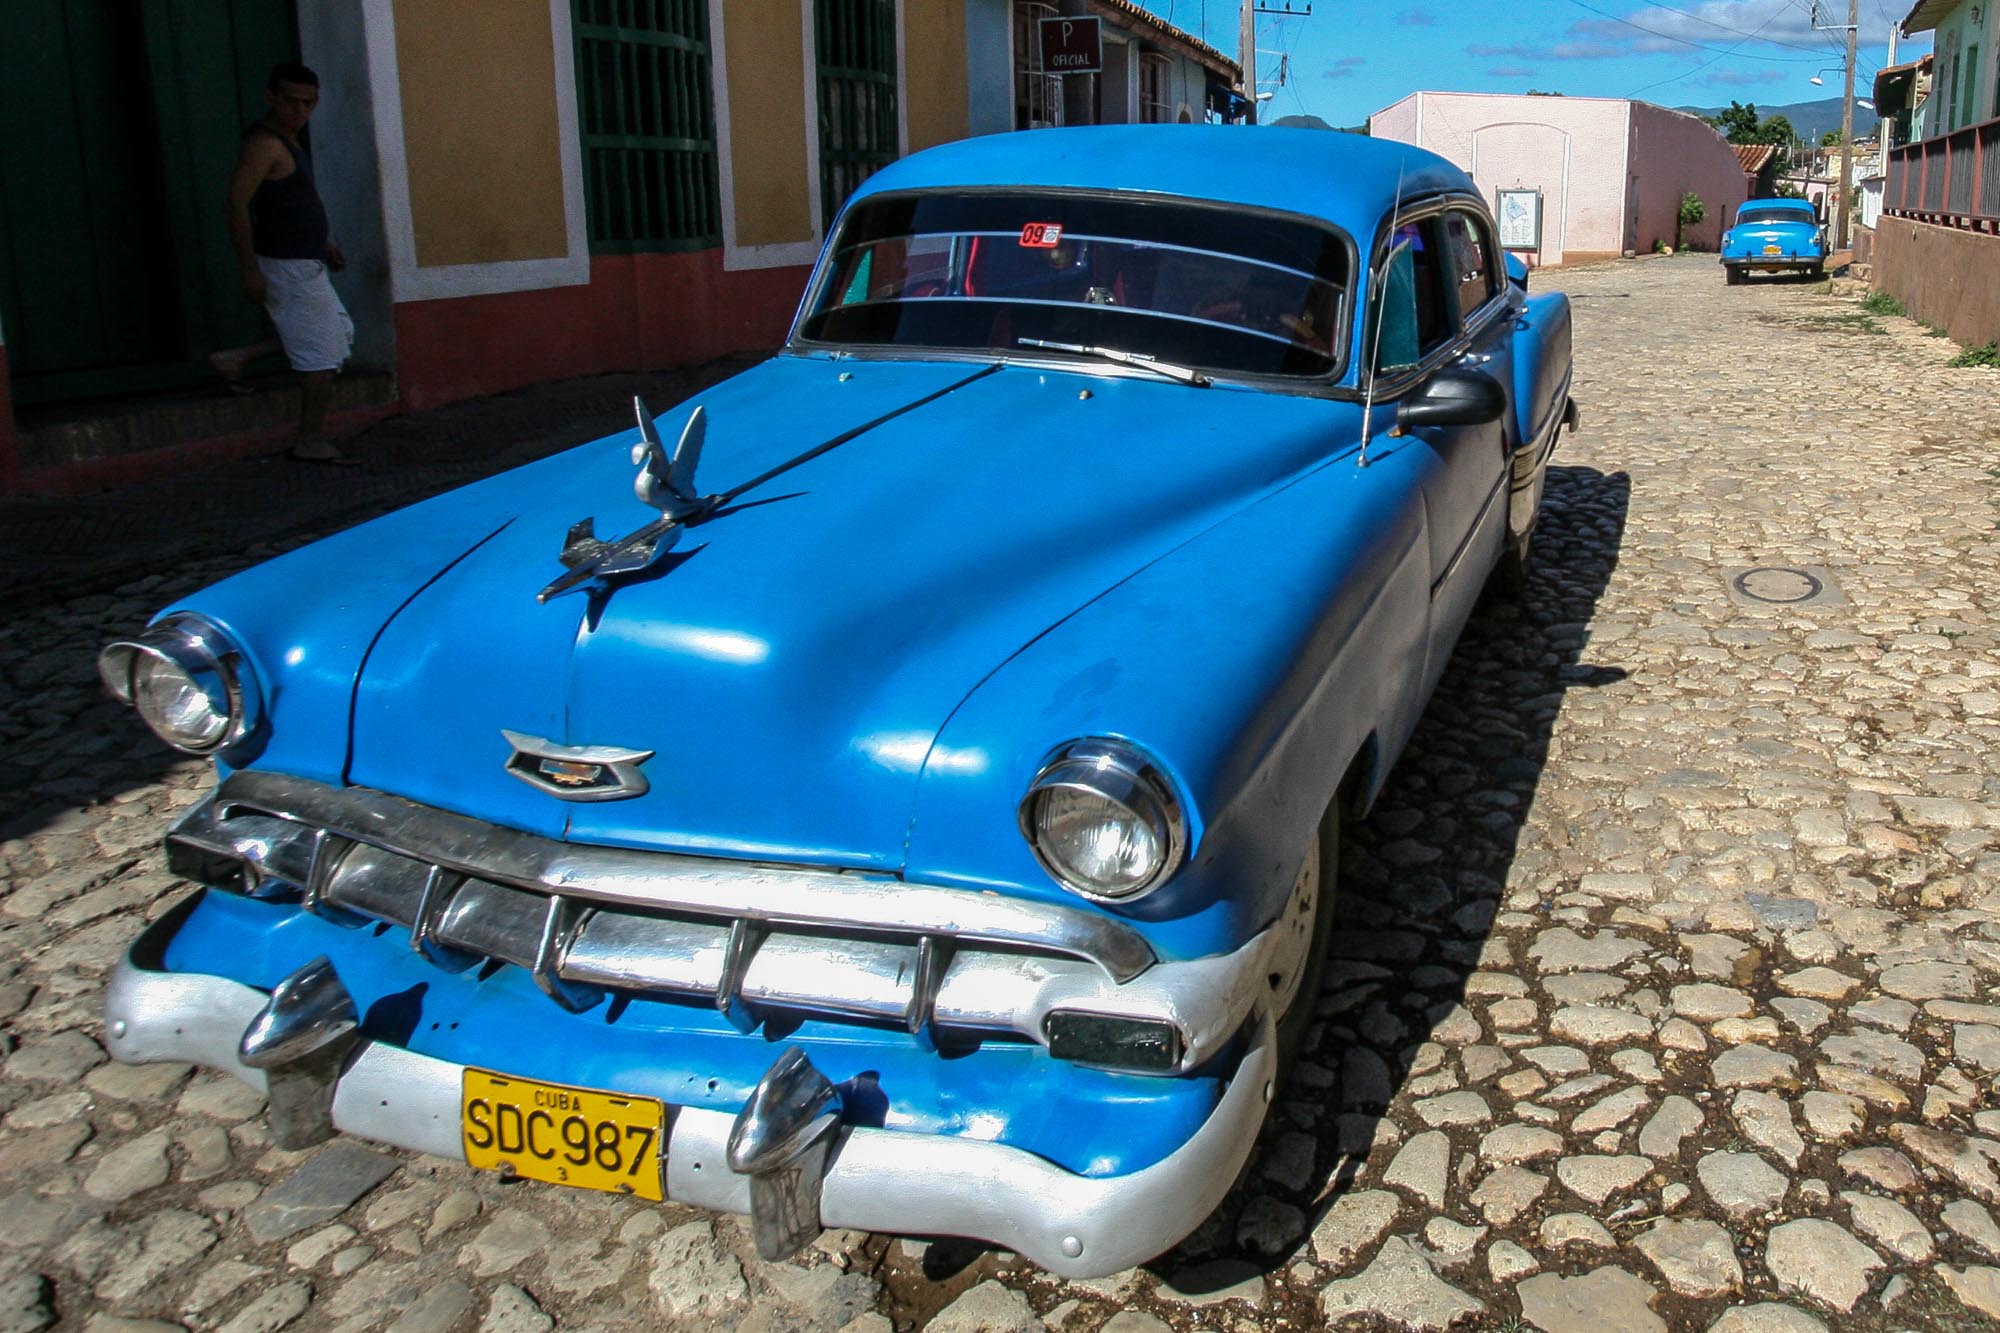 Ein alter Chevrolet in den Straßen von Trinidad.